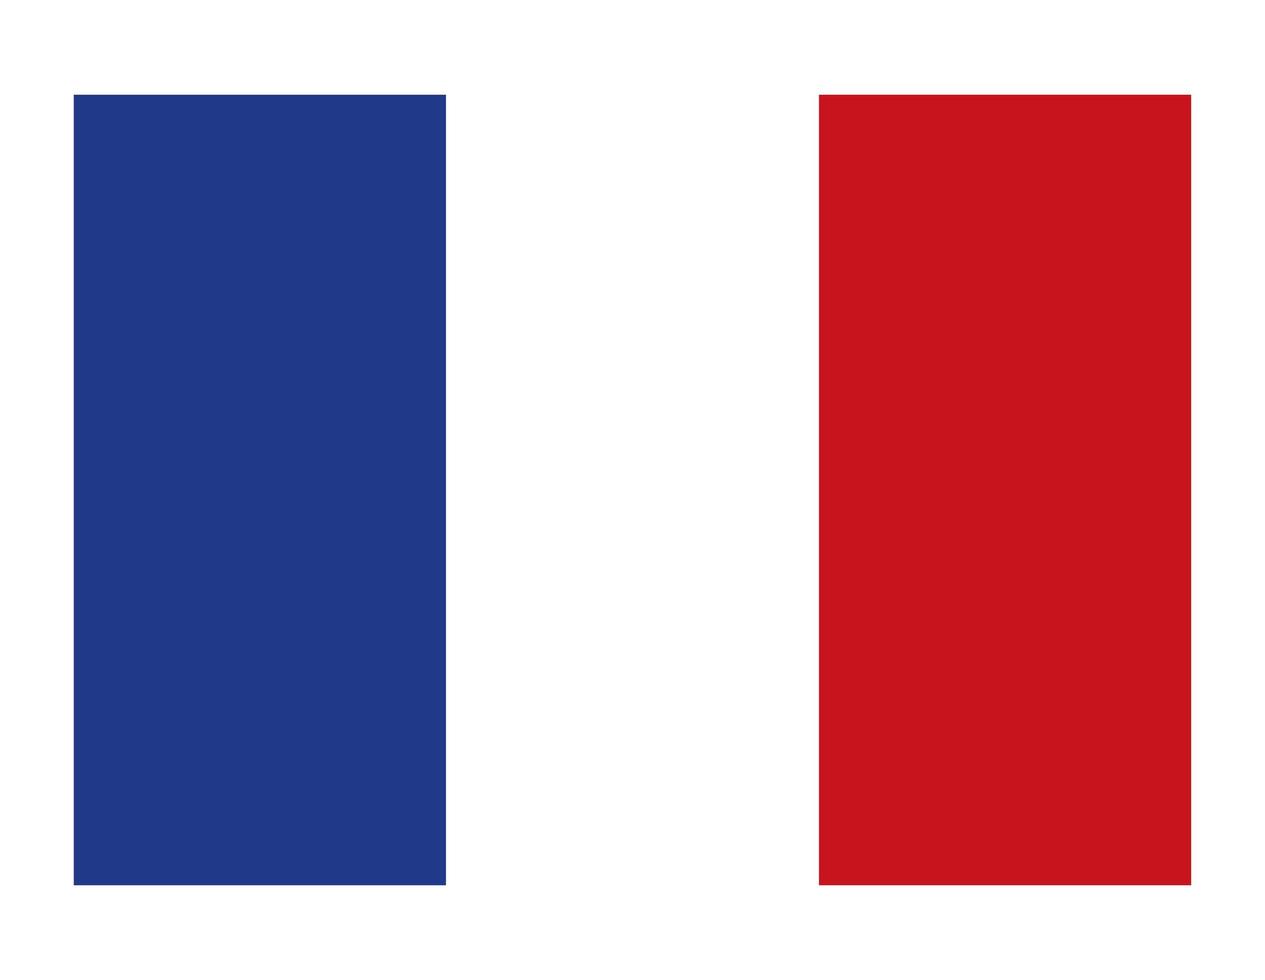 bandiera del paese della francia vettore